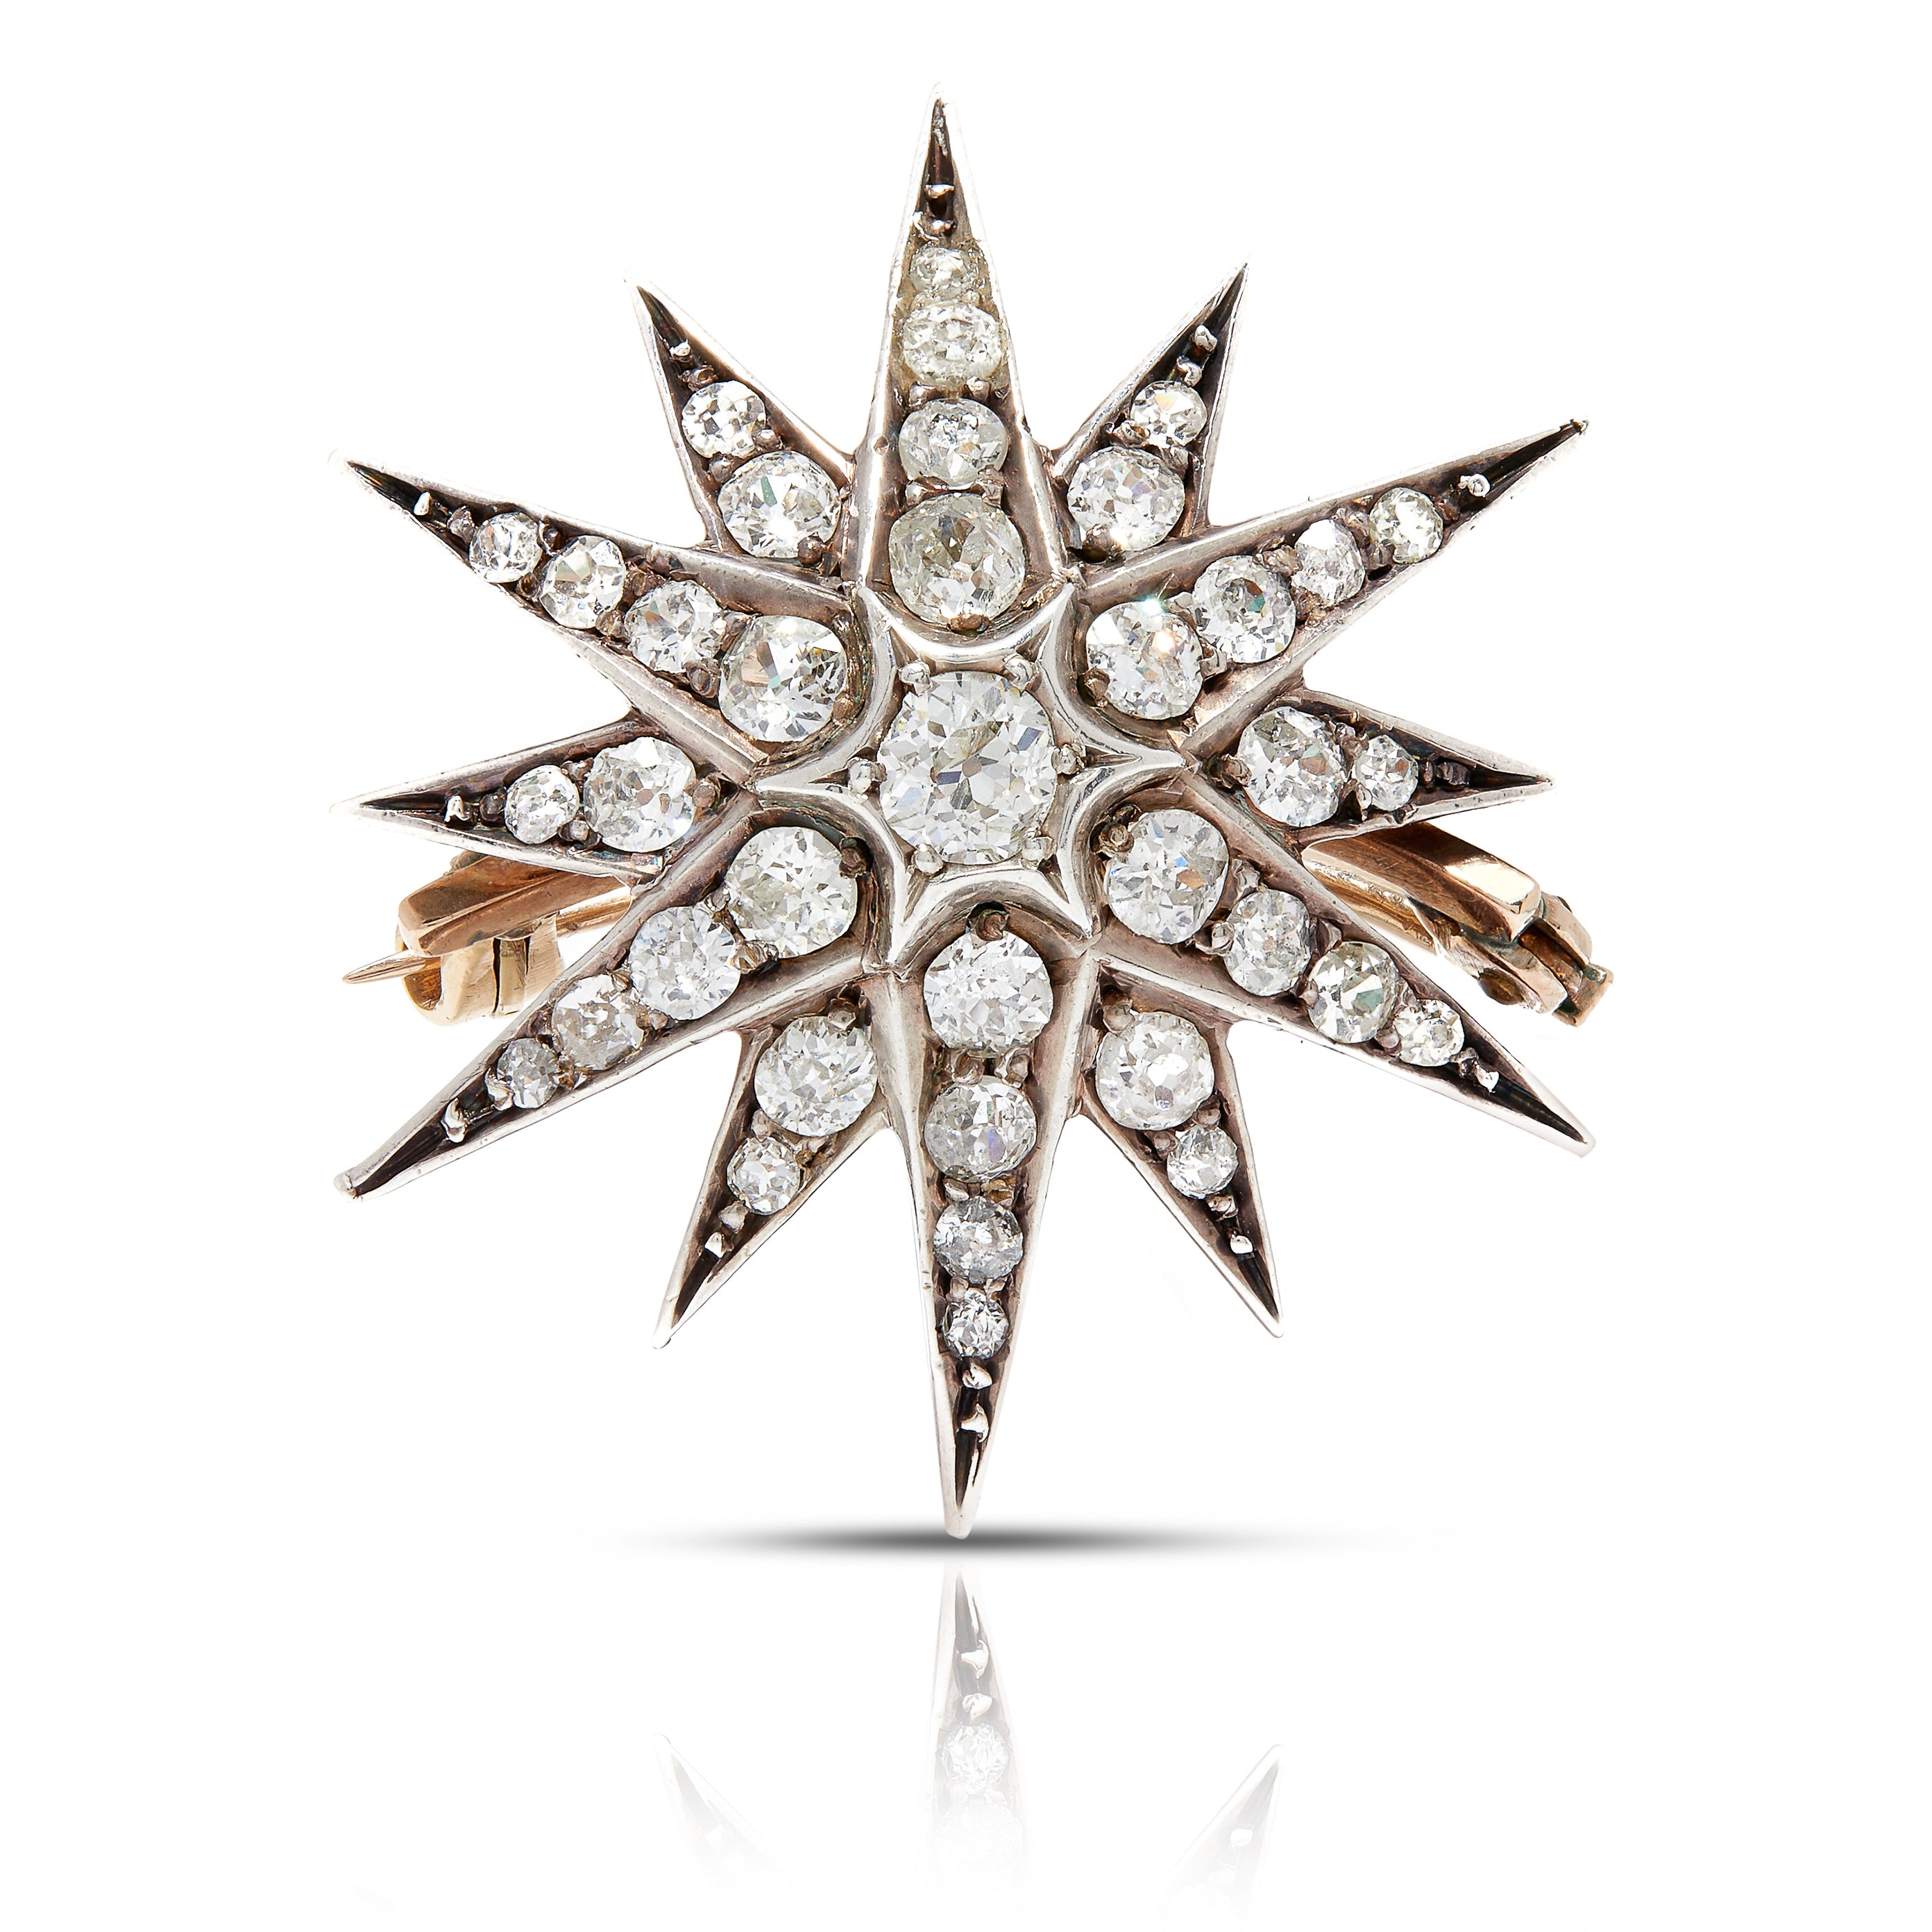 Antique diamond brooch in a starburst motif.